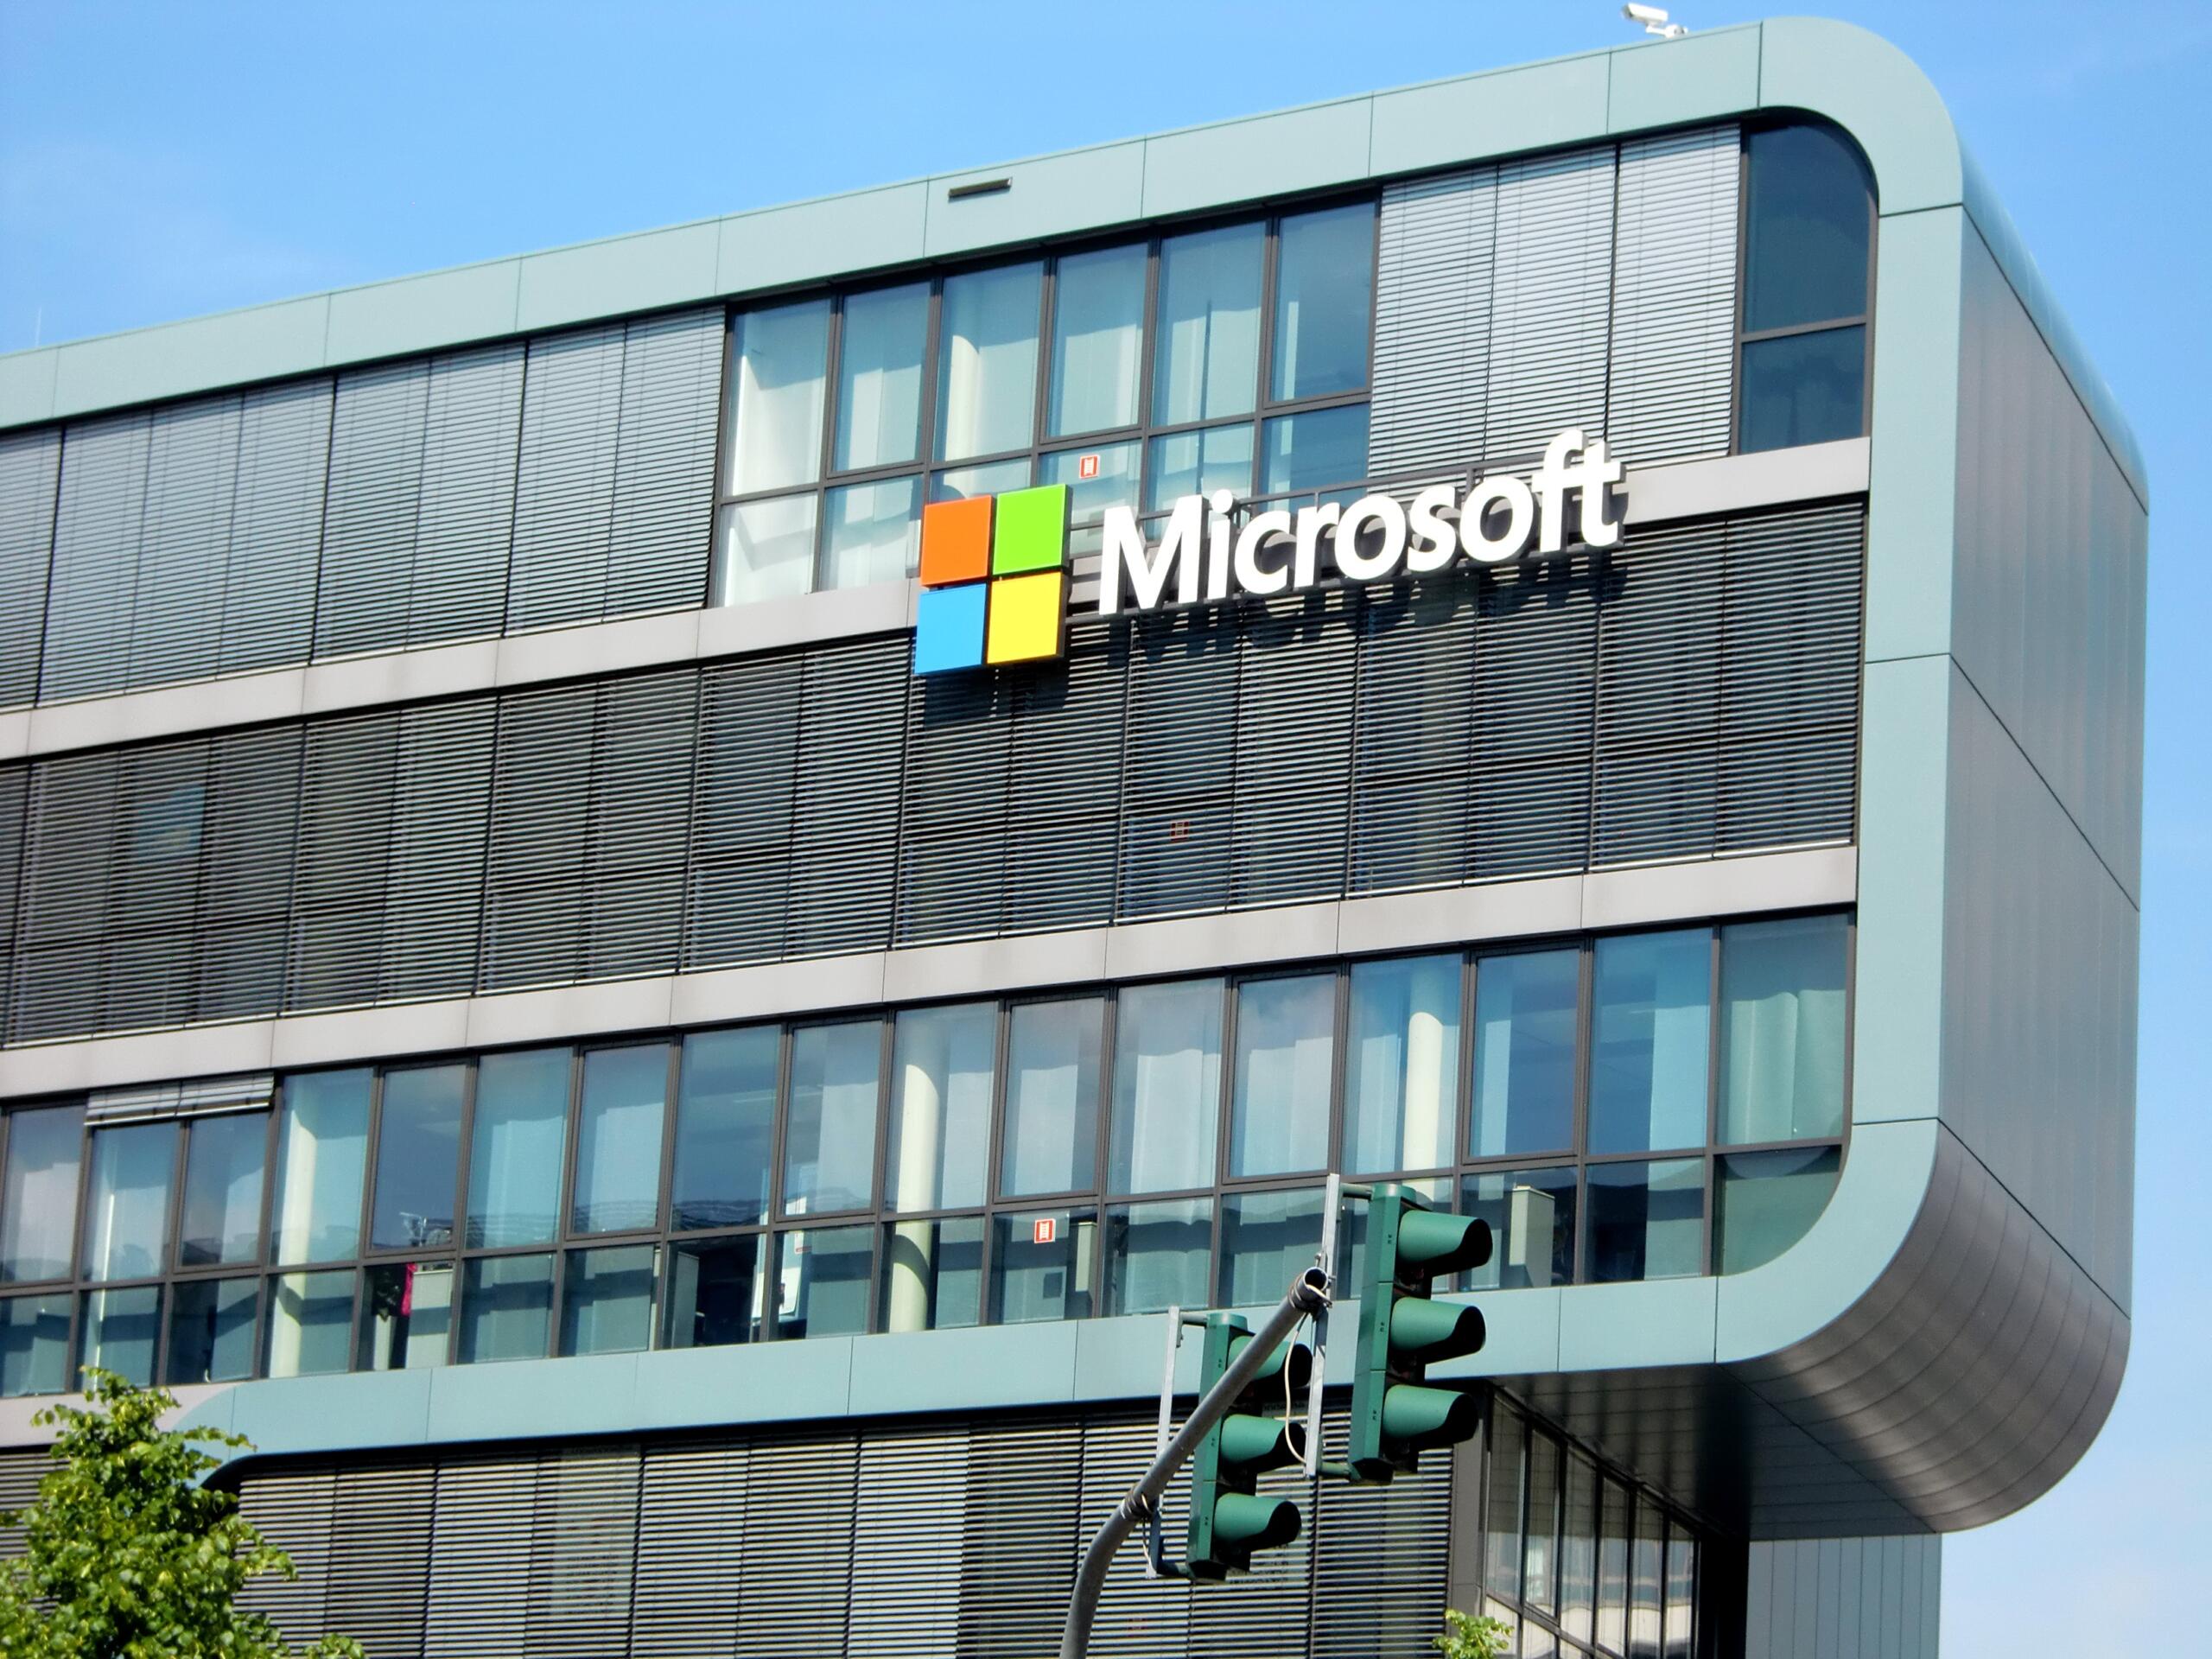 مایکروسافت از ساخت چهارمین دیتابیس خود در هند خبر داد